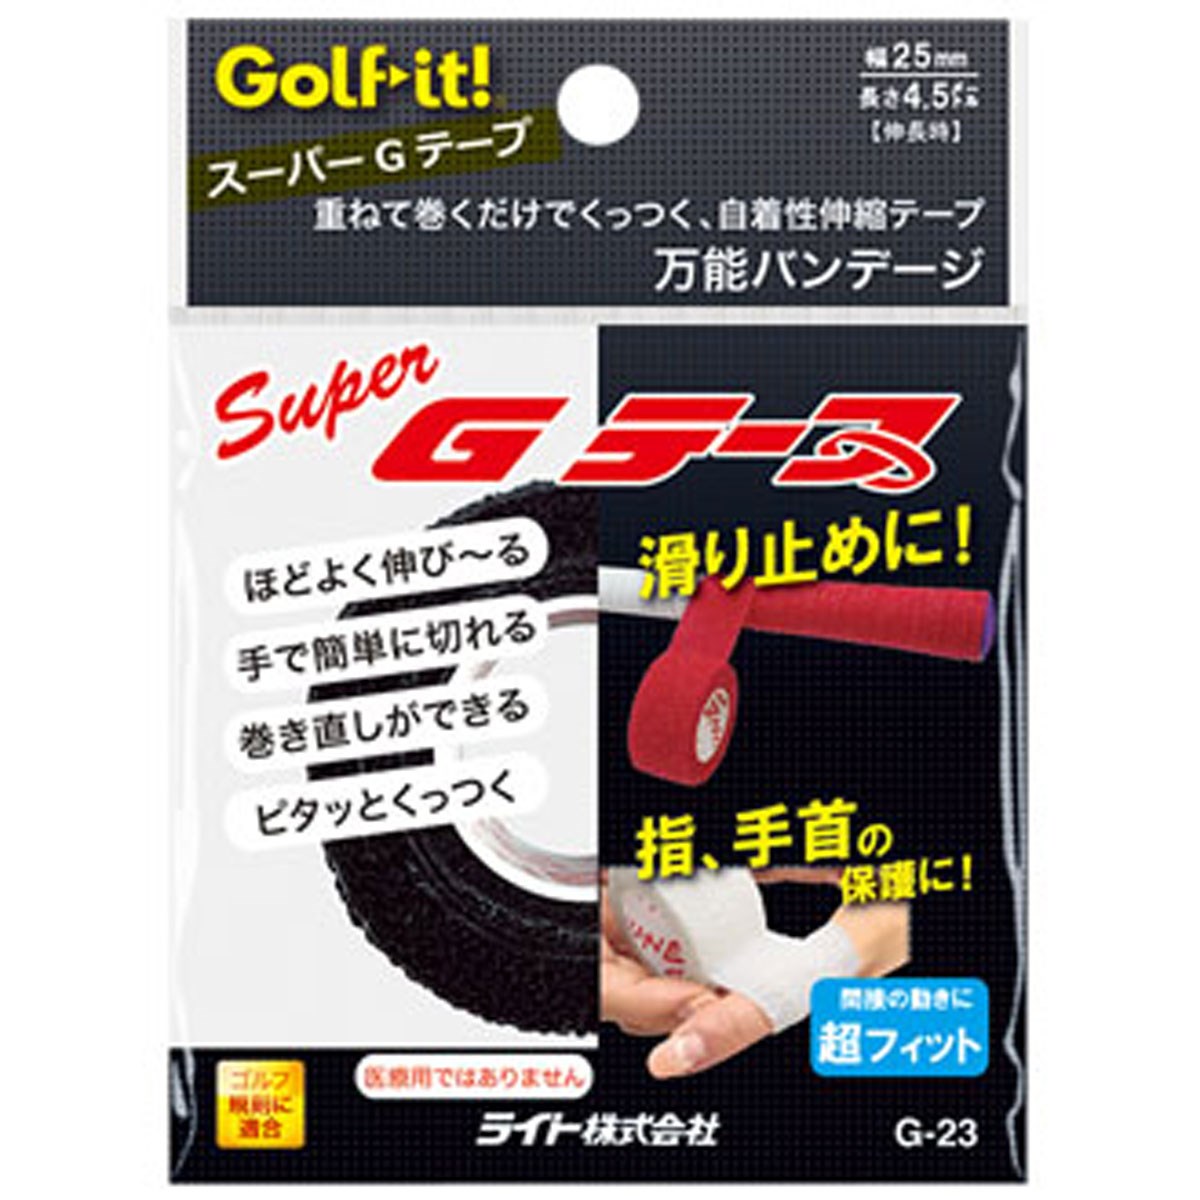  ライト G-23 スーパーGテープ ゴルフ